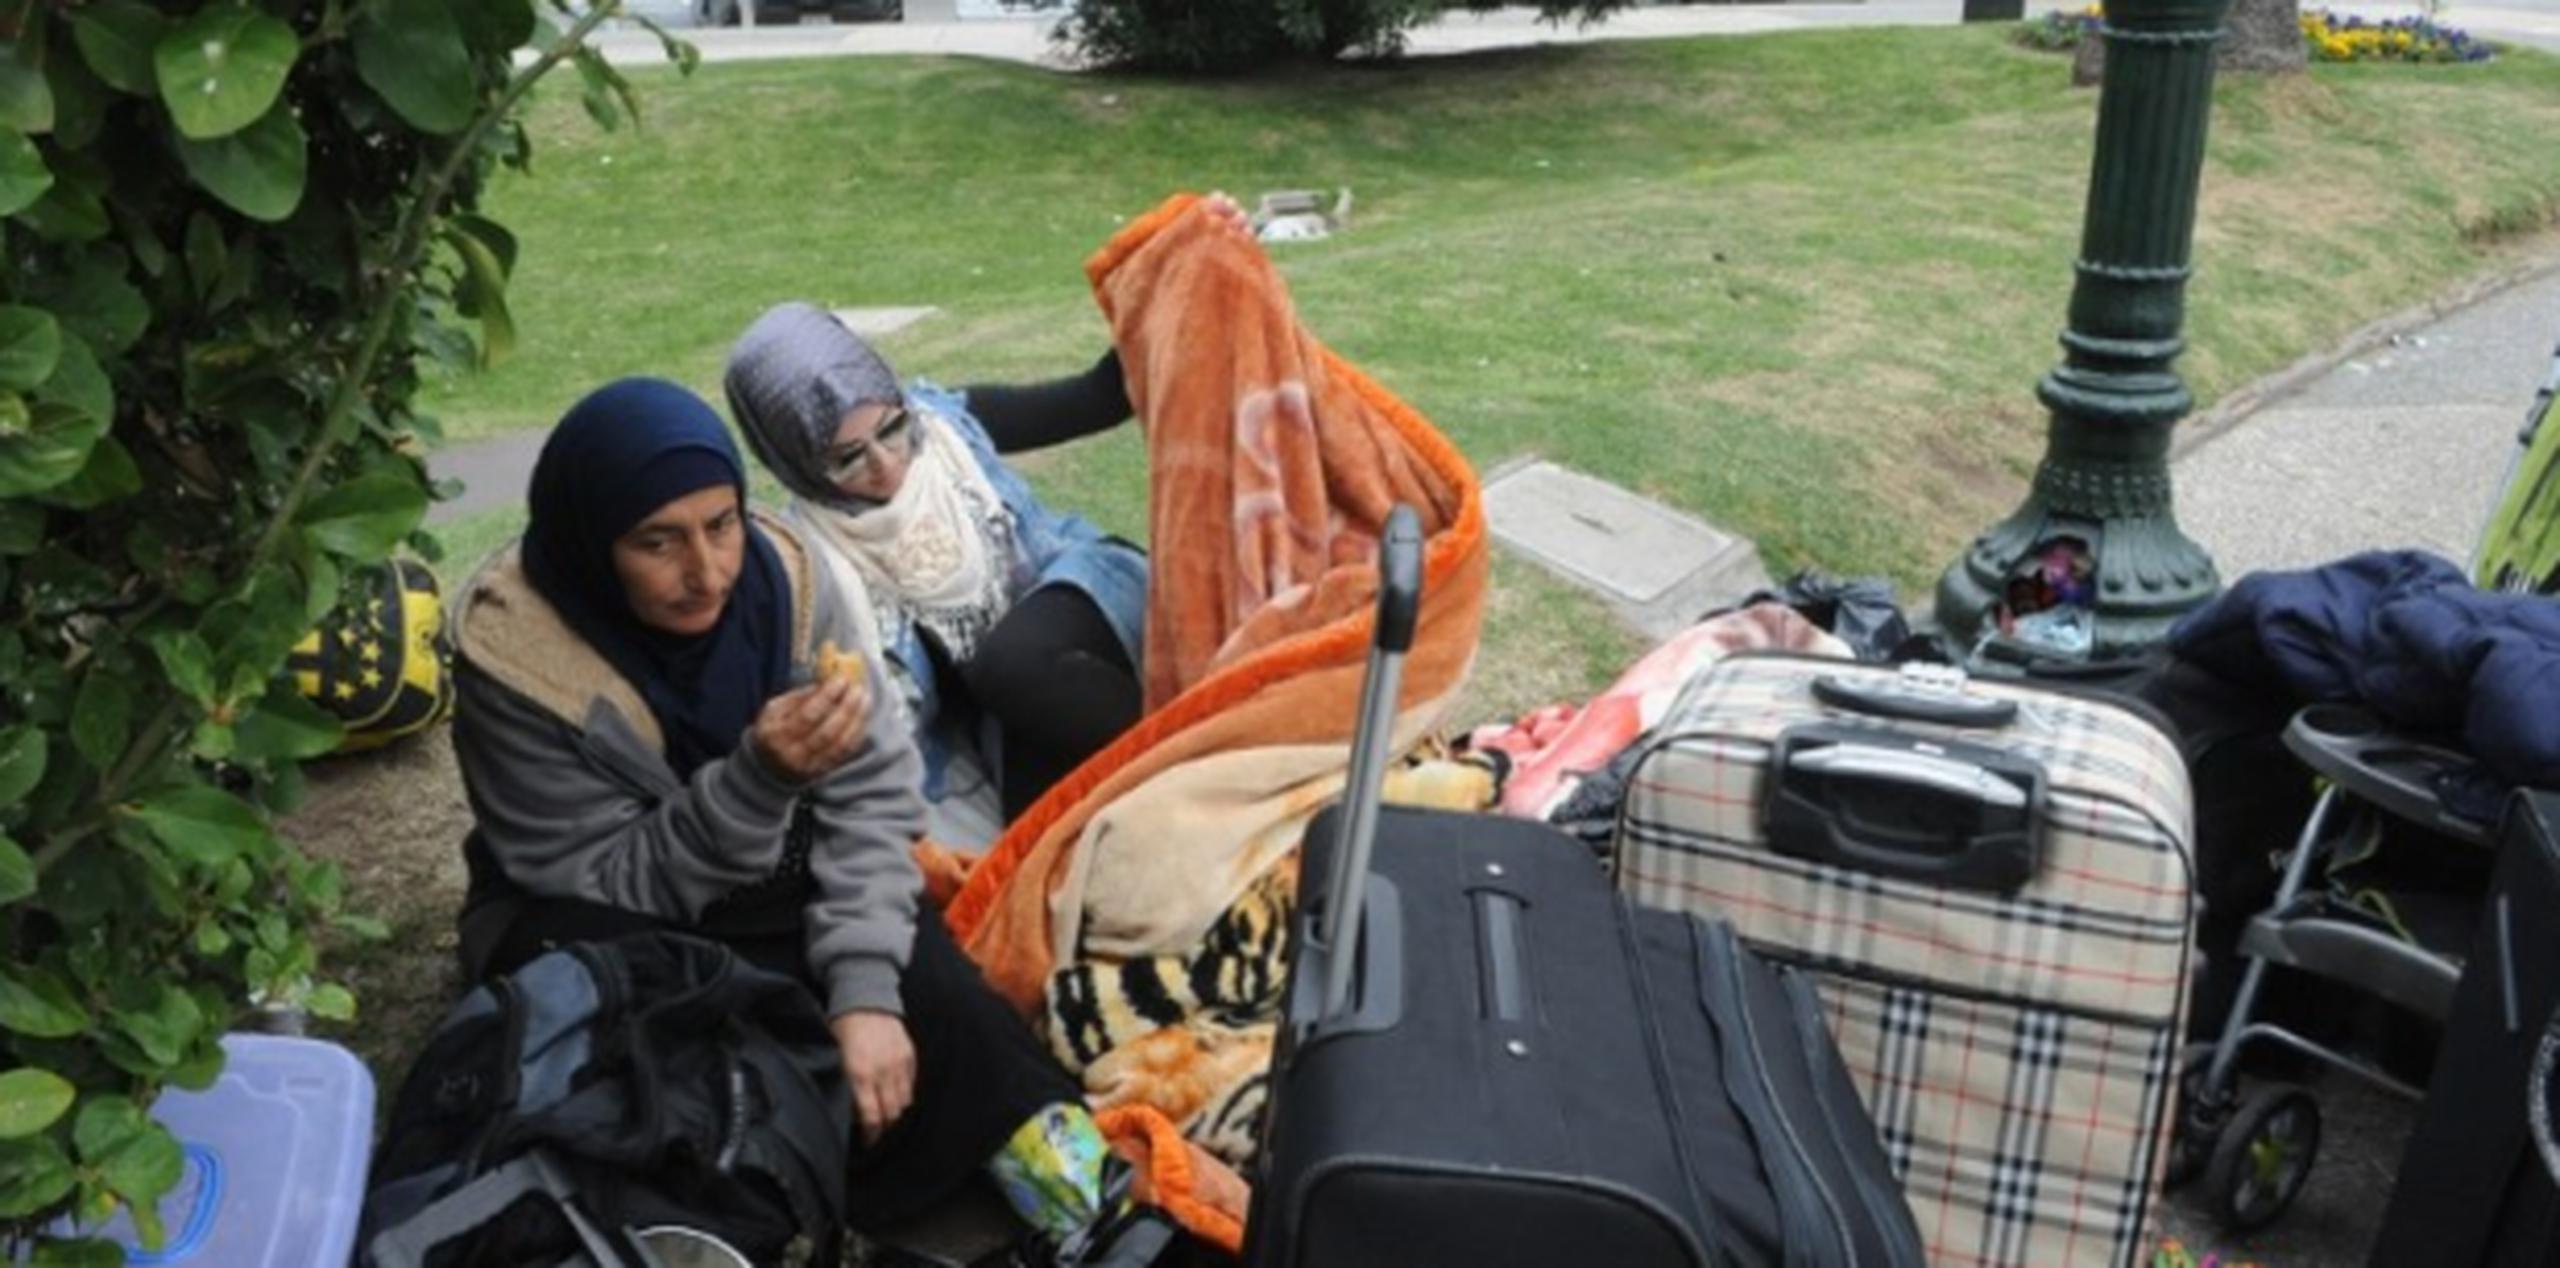 Maletas en mano, las familias sirias insisten en que solamenmte acepatrán ser llevadas al aeropuerto de Uruguay para que las lleven a Líbano o Siria. (AFP)